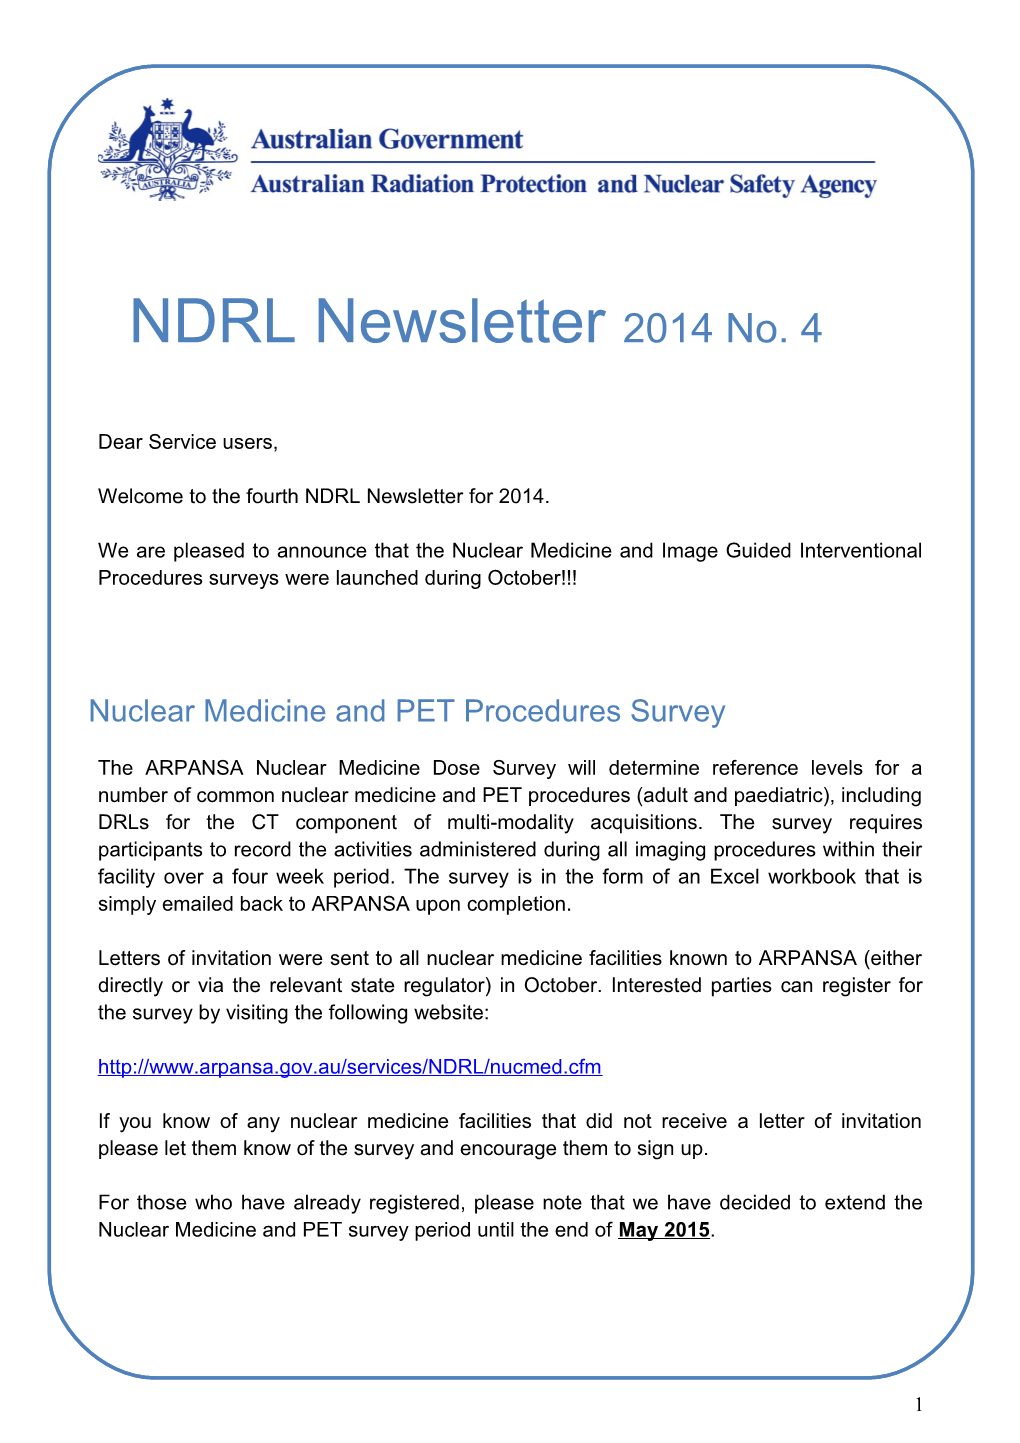 NDRL Newsletter No 4 2014